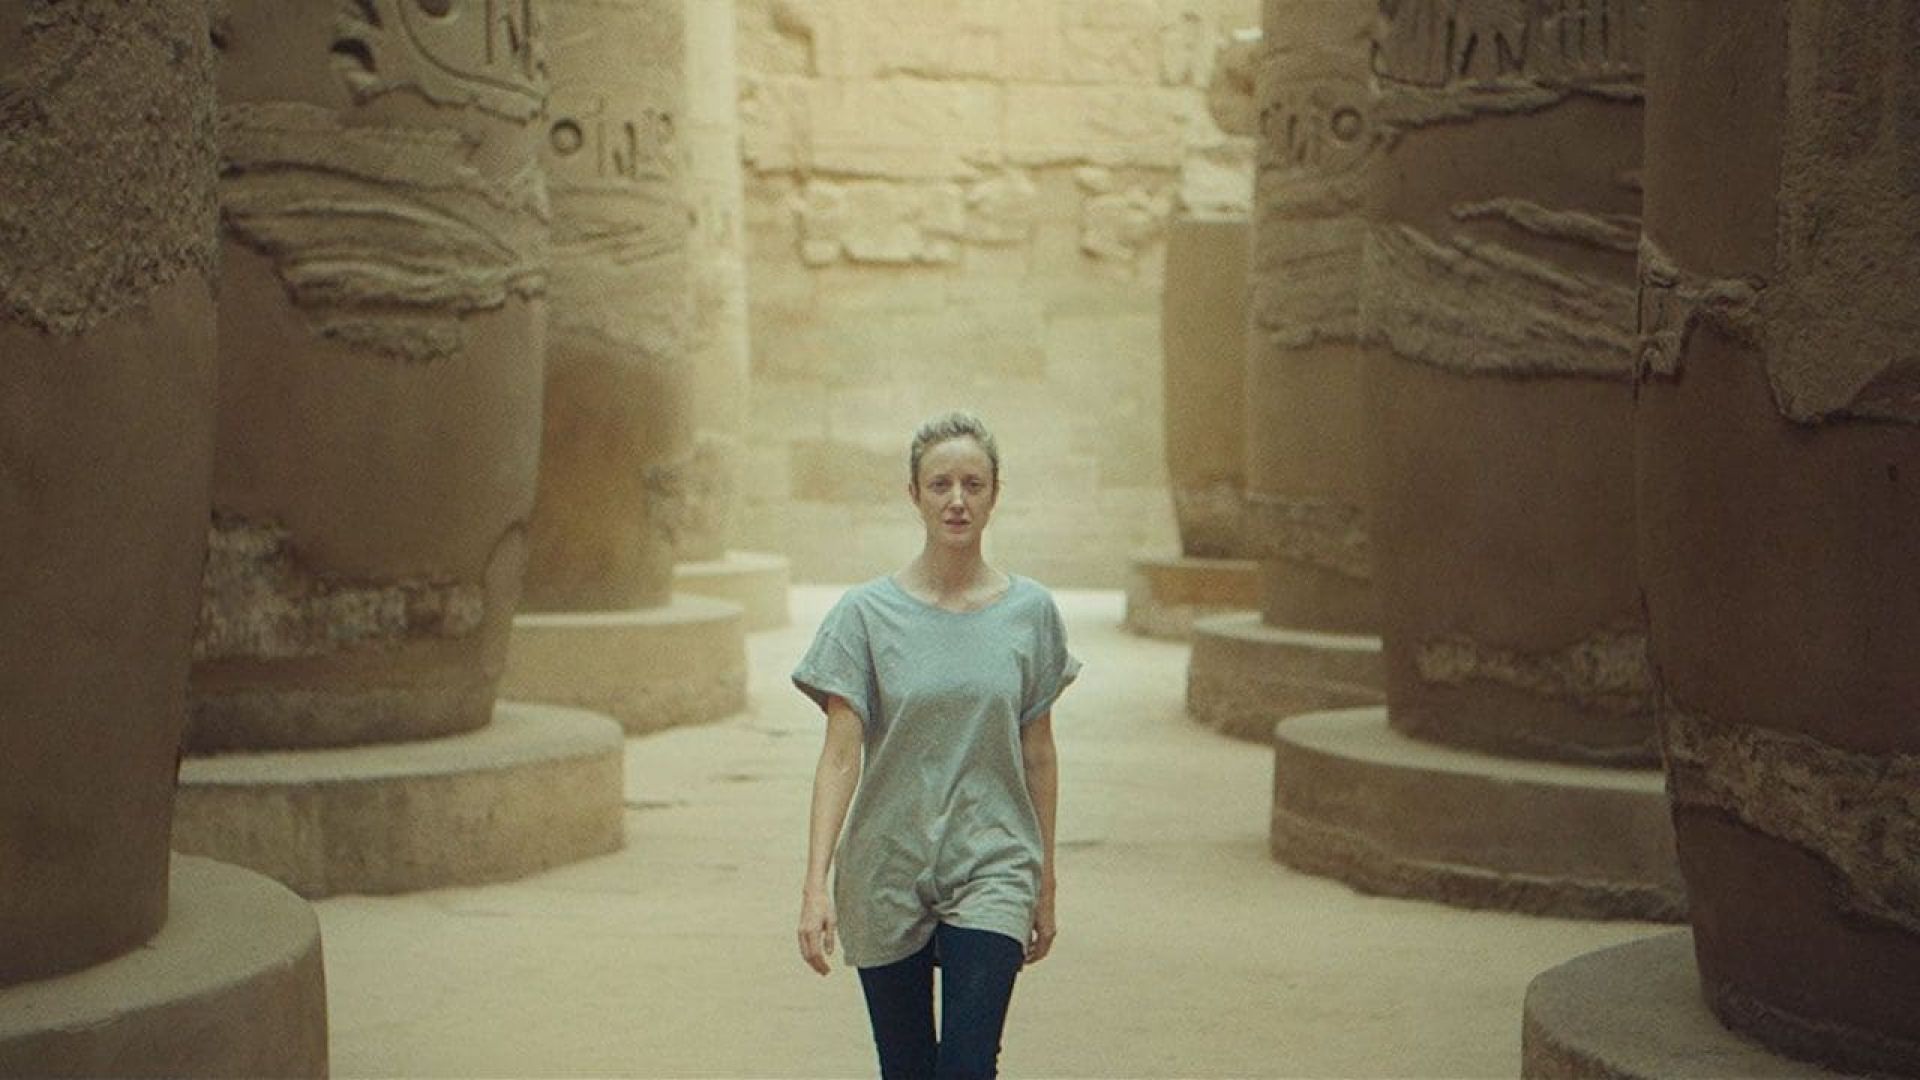 دانلود فیلم Luxor 2020